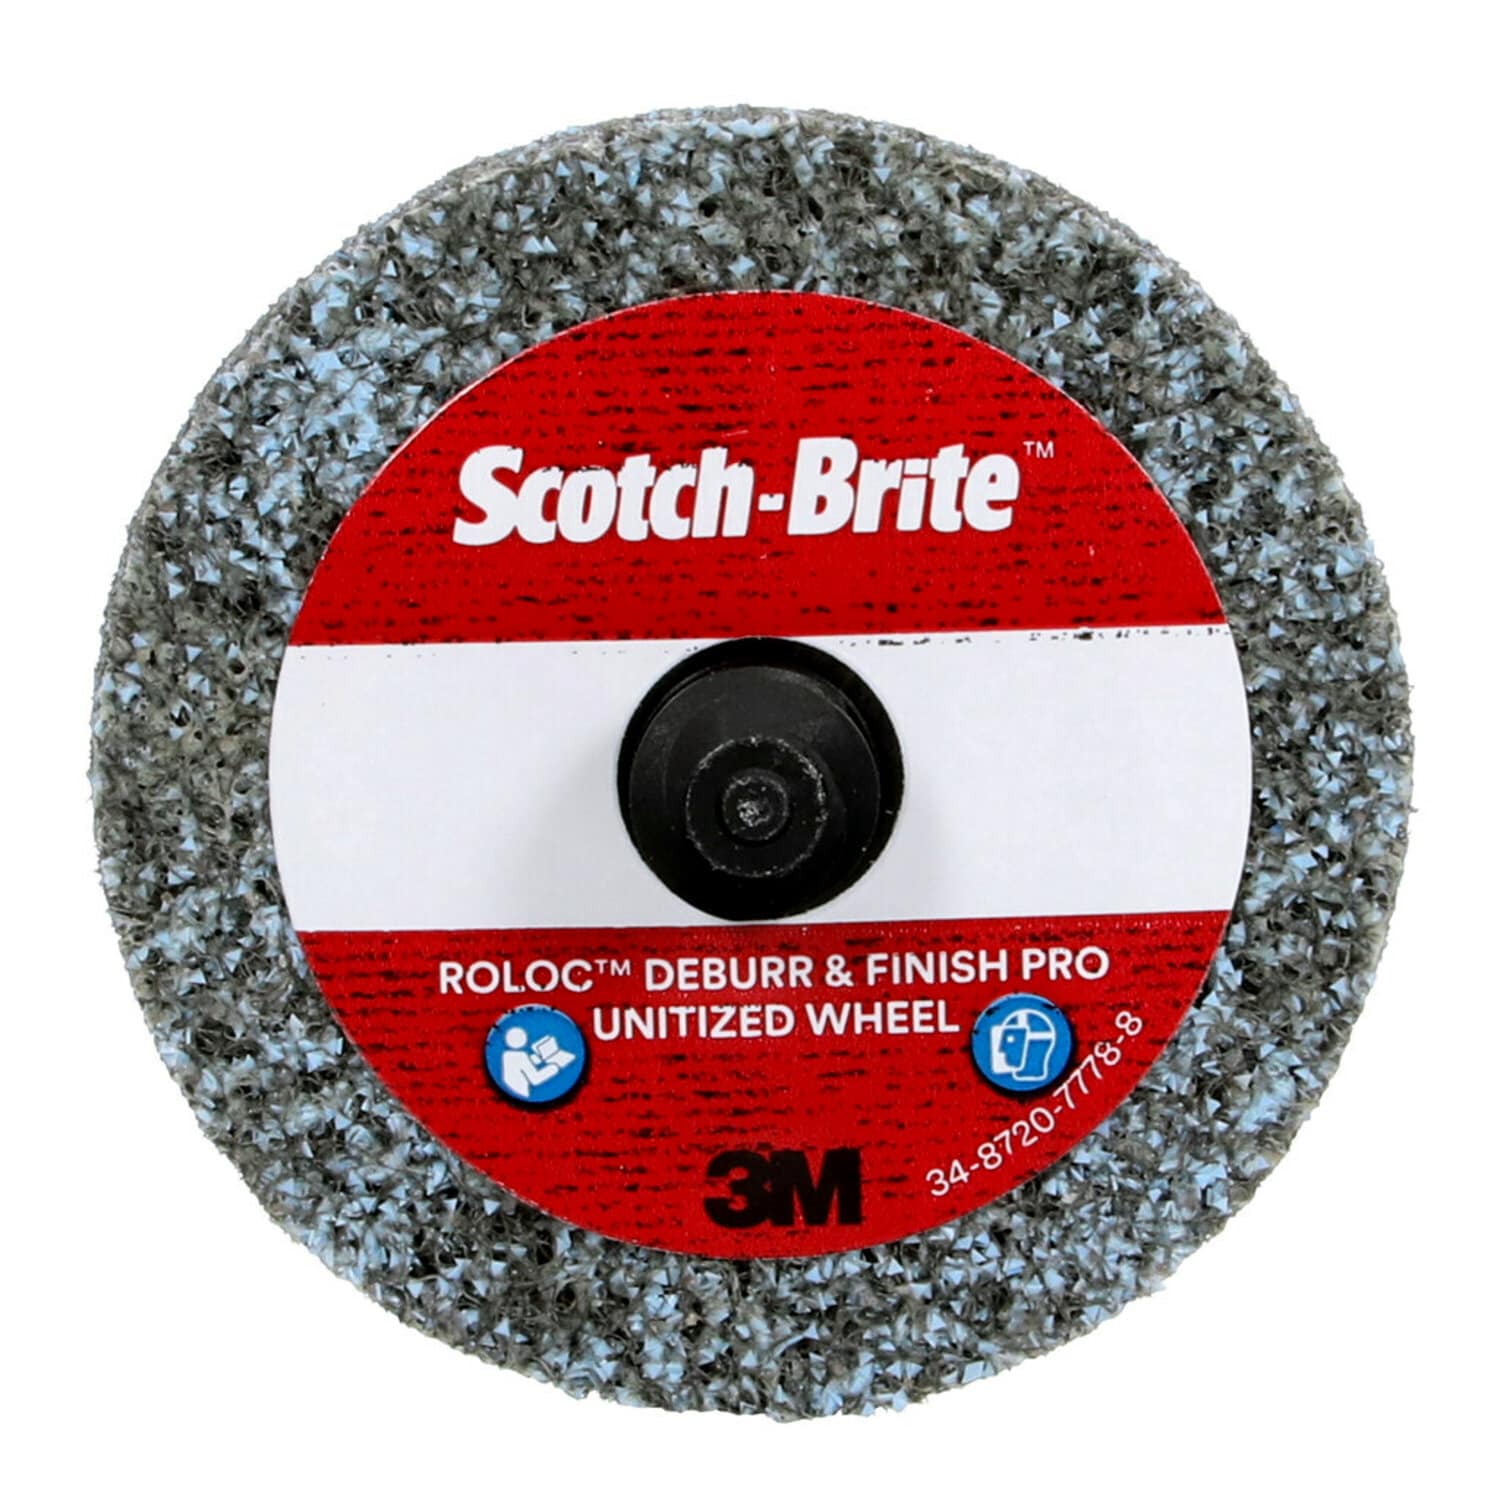 7100290649 - Scotch-Brite Roloc Deburr & Finish PRO Unitized Wheel, DP-UR, 9C Extra Coarse+, TR, 2 in x 1/4 in, 15/Carton, 60 ea/Case